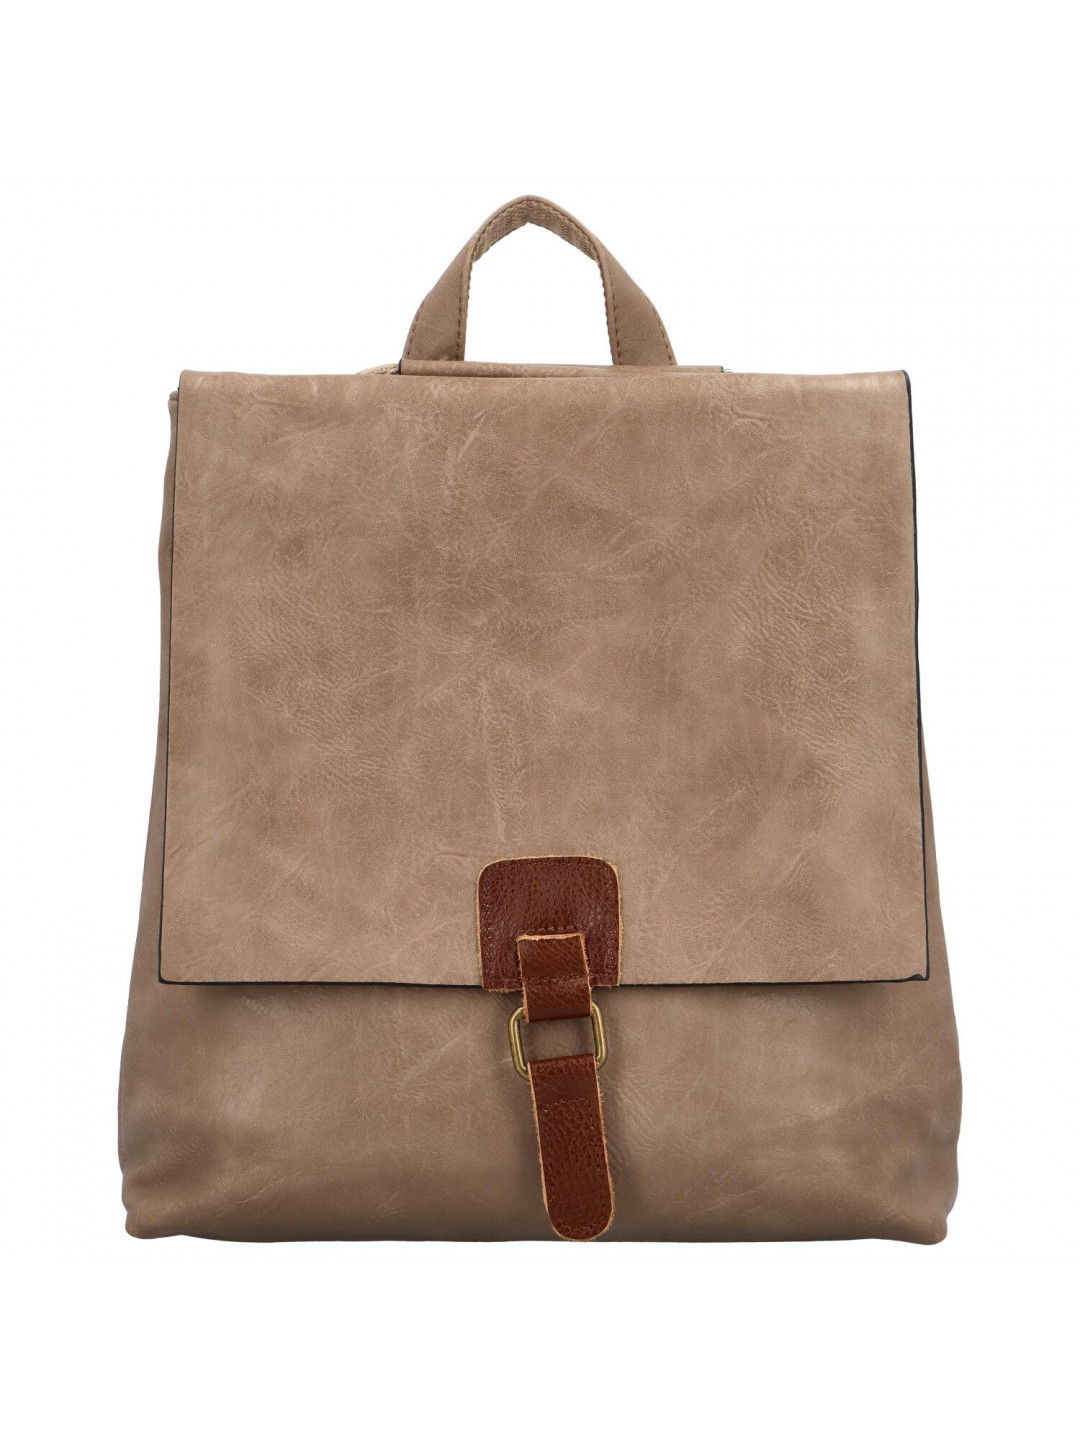 Dámský kabelko batoh světle hnědý – Paolo bags Olefir